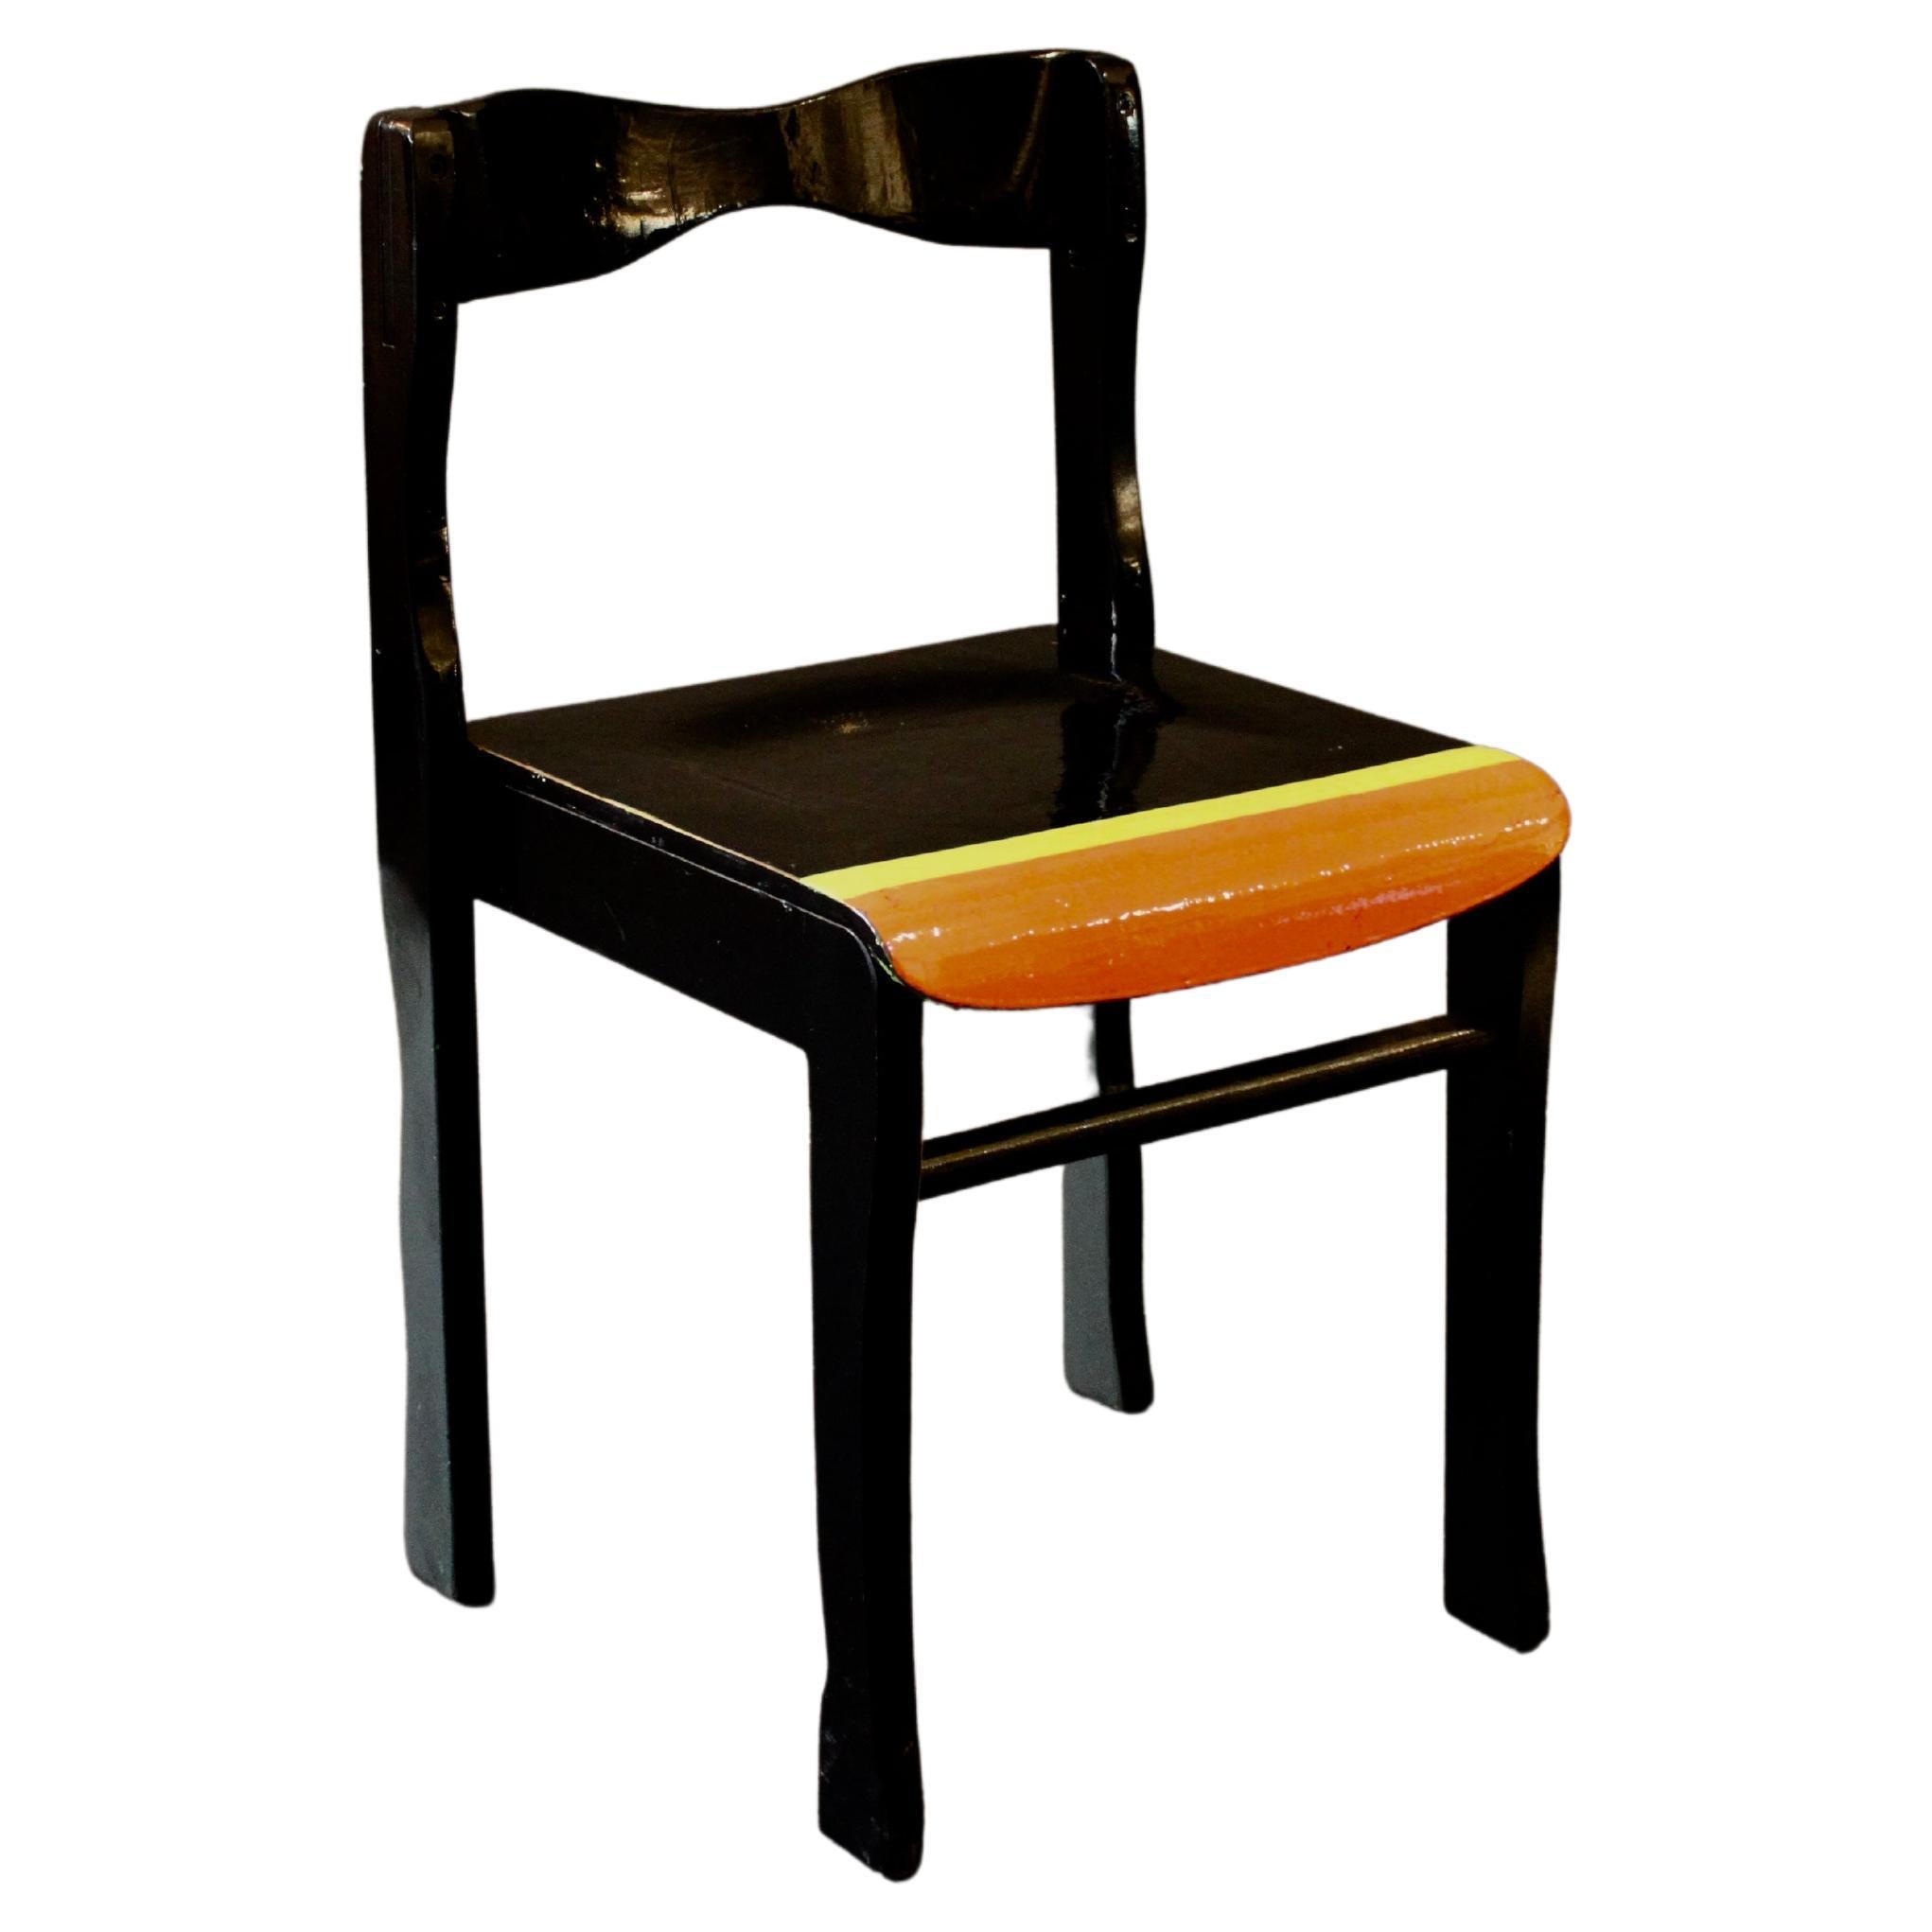 Chaise presque noire de l'artiste allemand Markus Friedrich Staab 2011 en vente